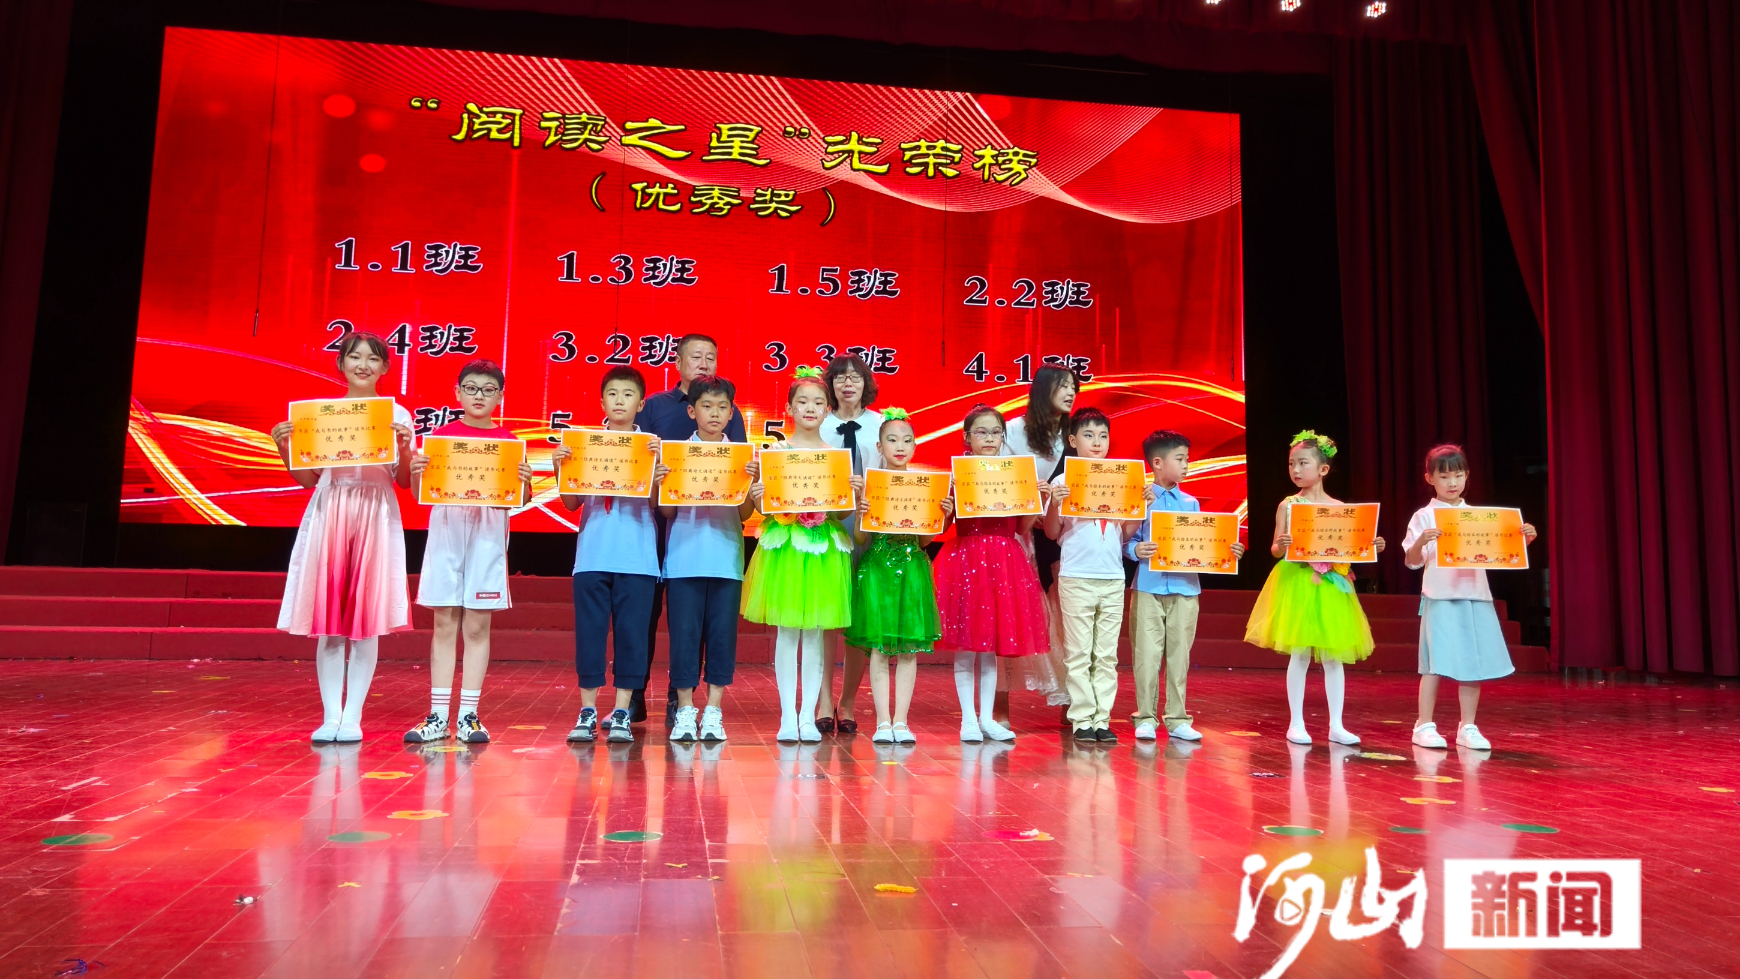 桥西区蒙古营小学举办第29届读书节文艺汇演活动